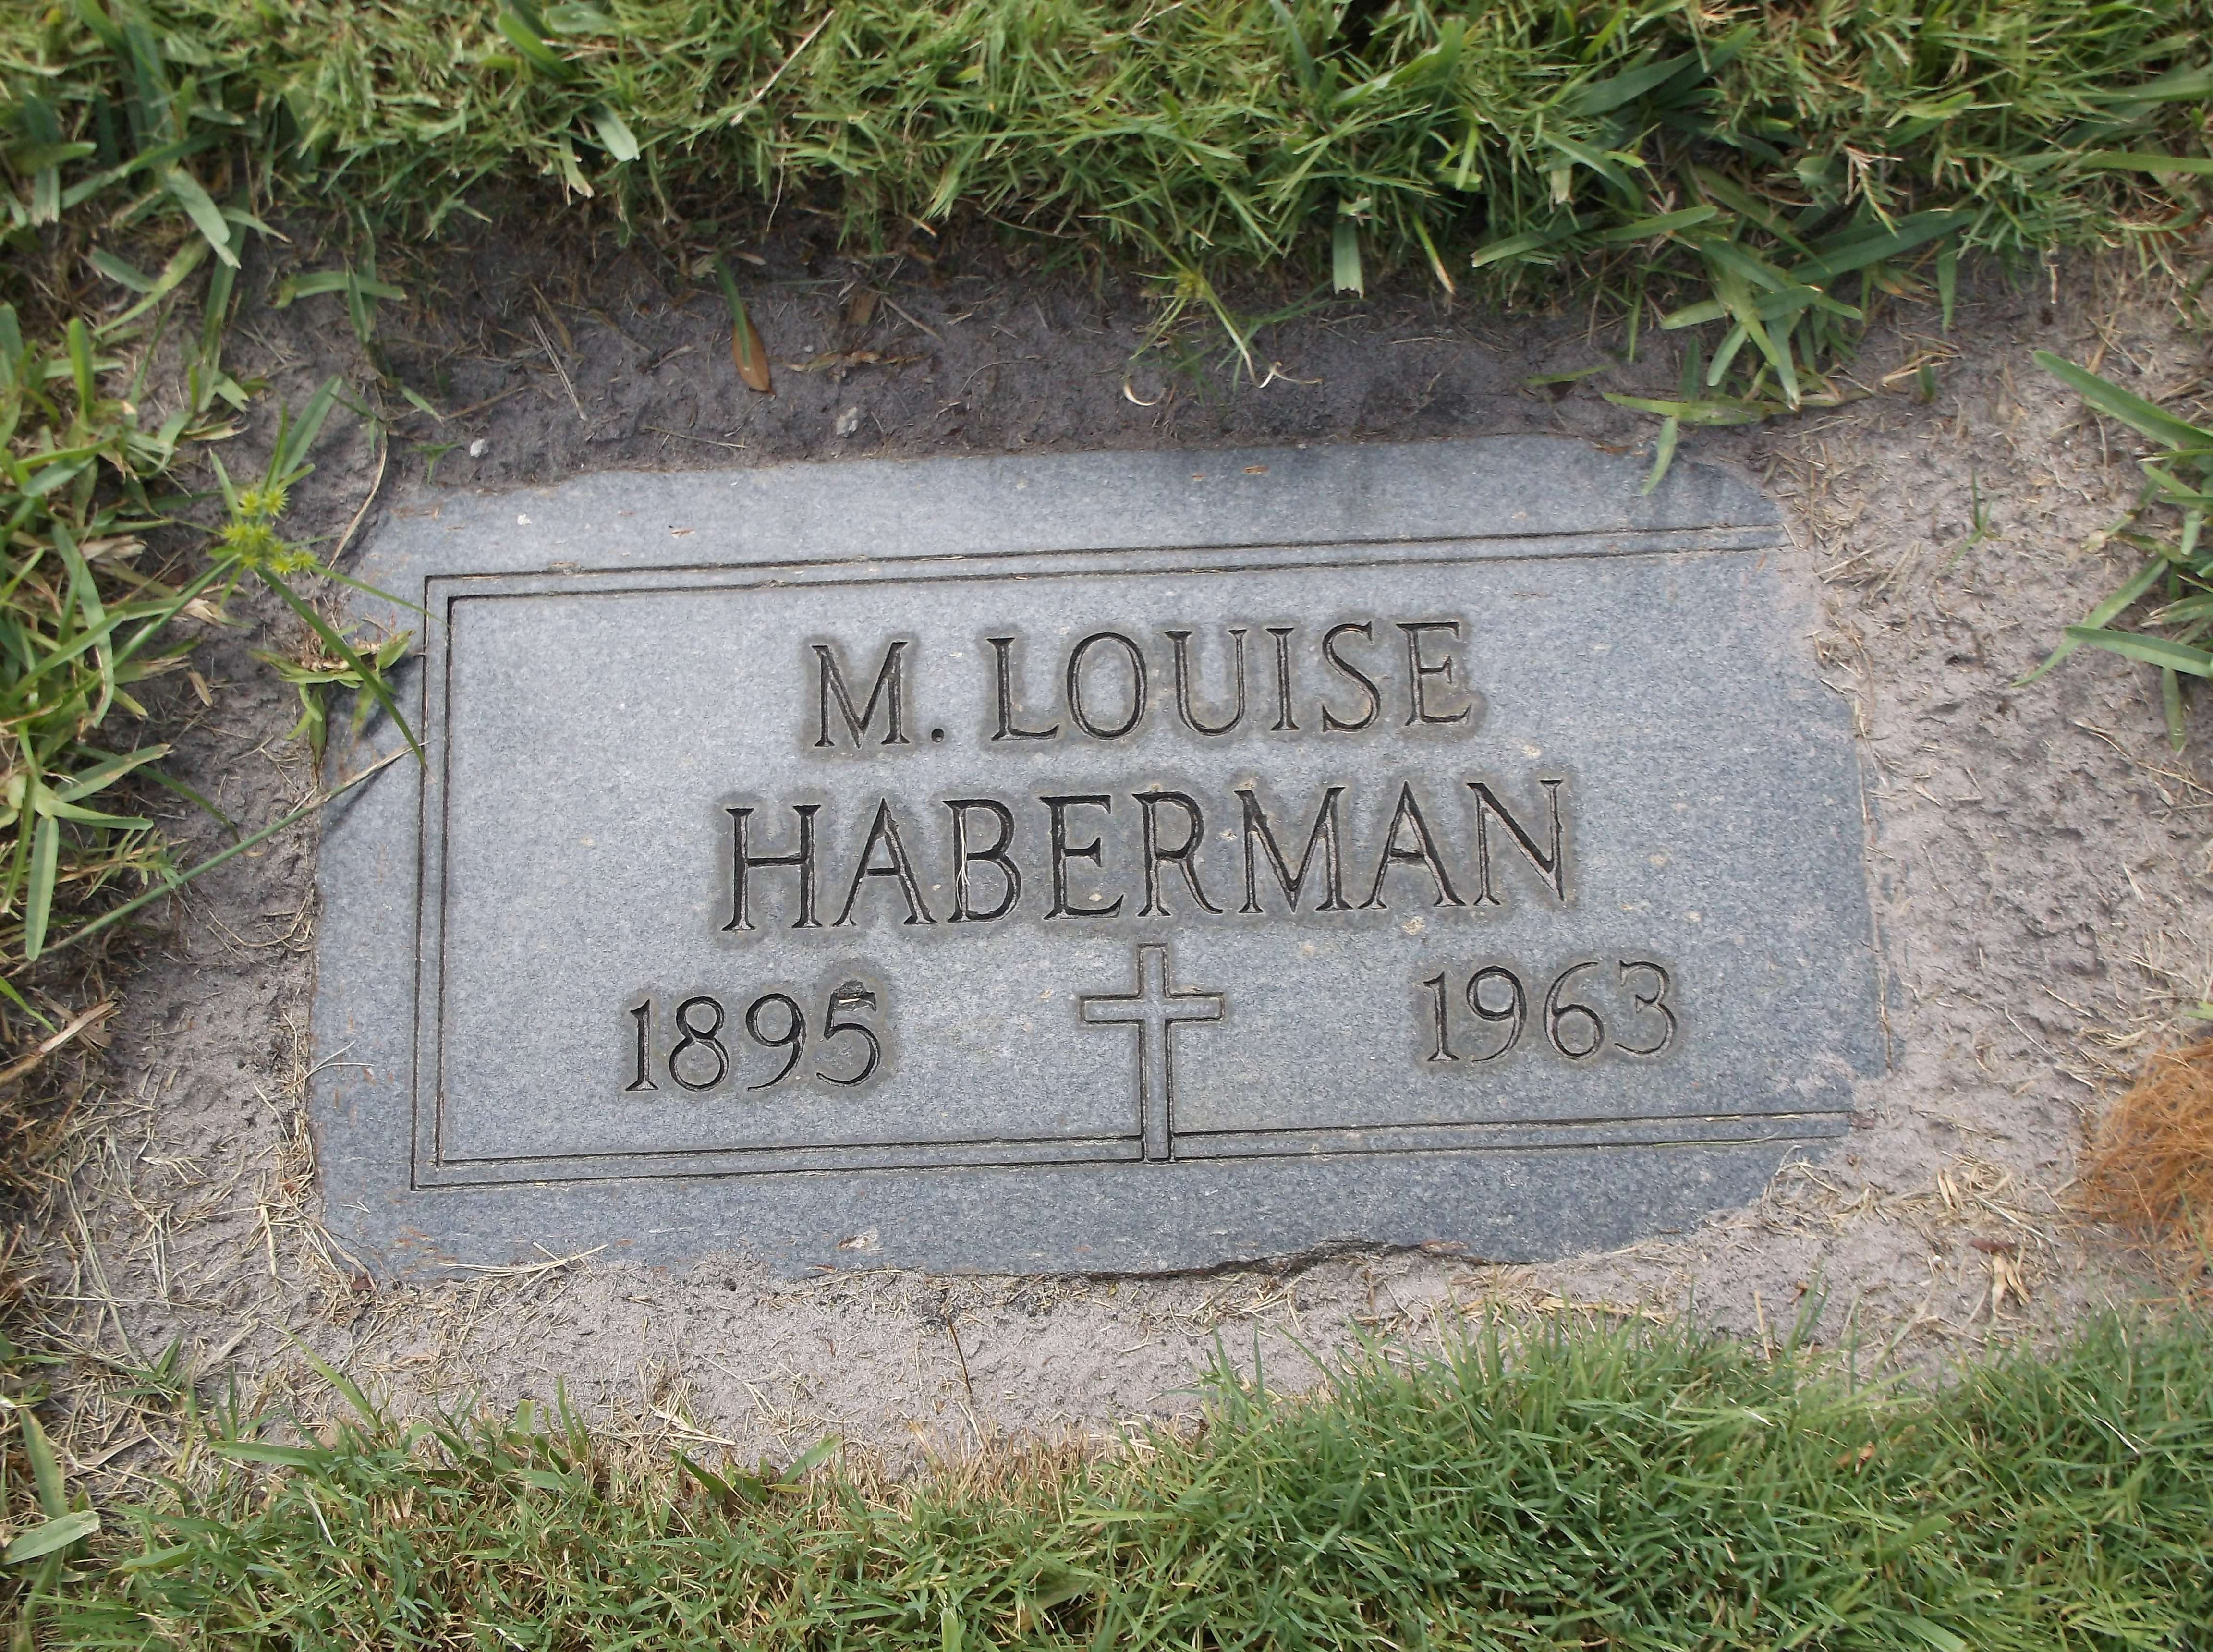 M Louise Haberman